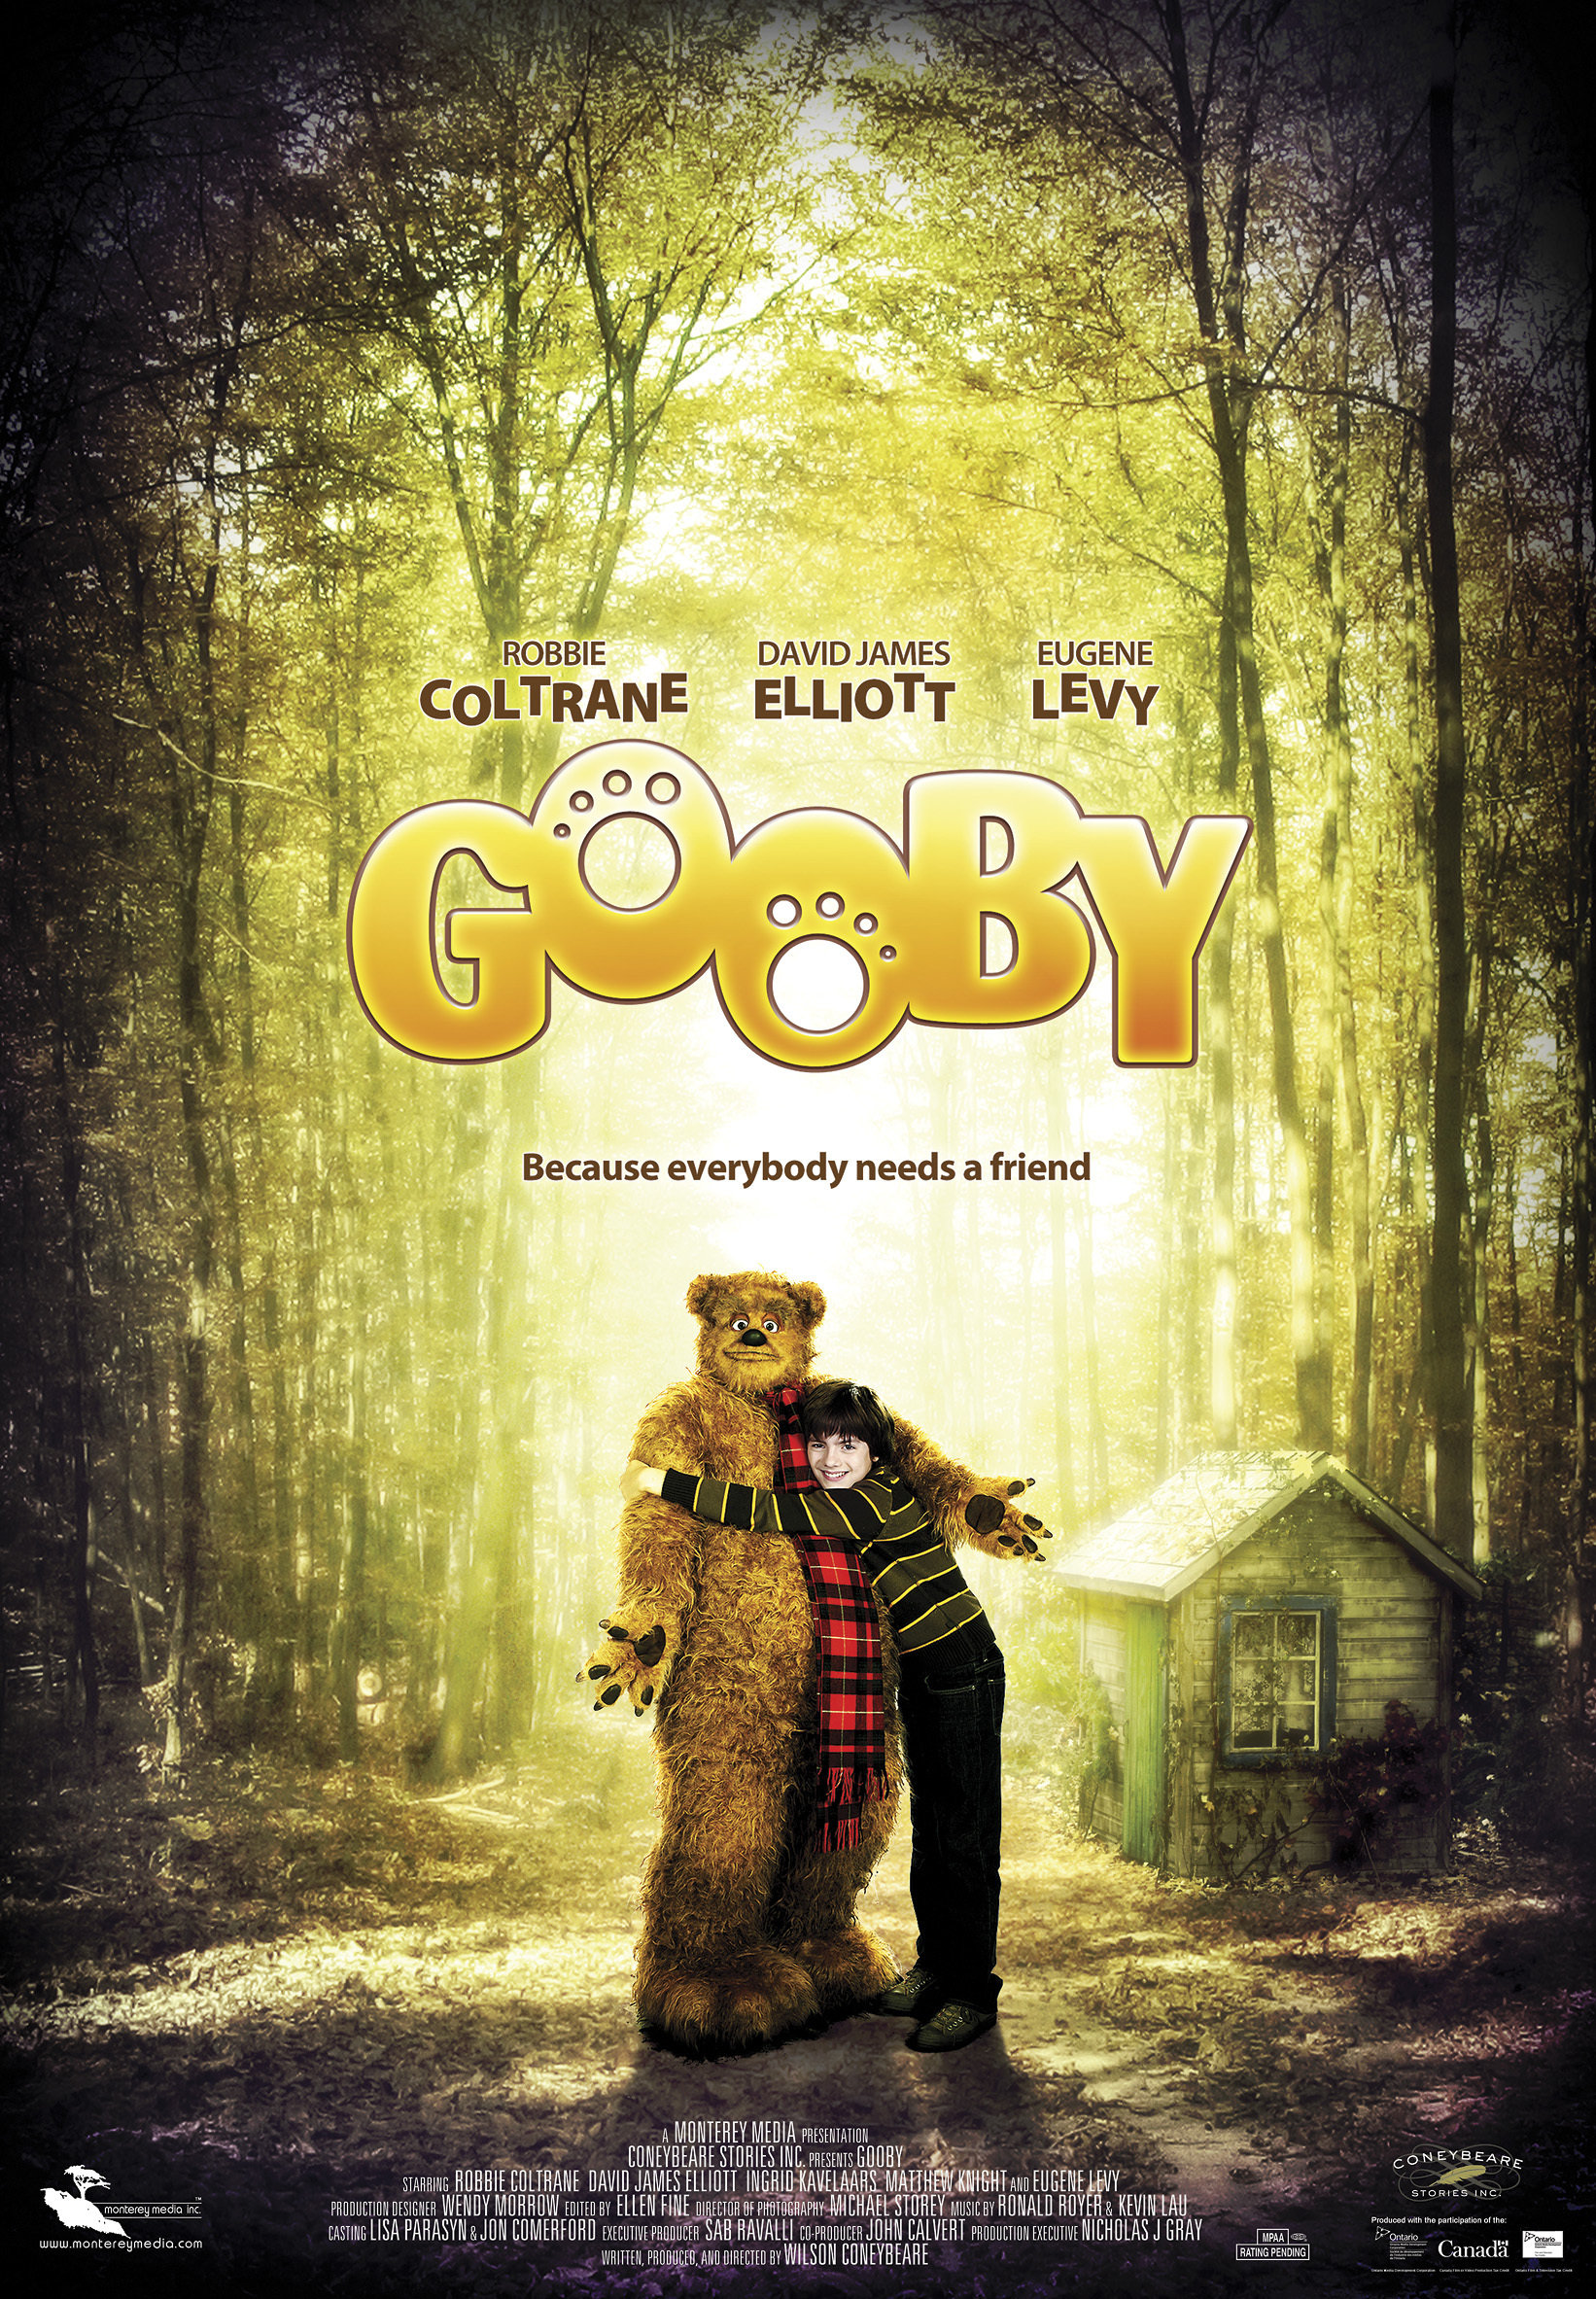 Gooby (2009) Screenshot 1 